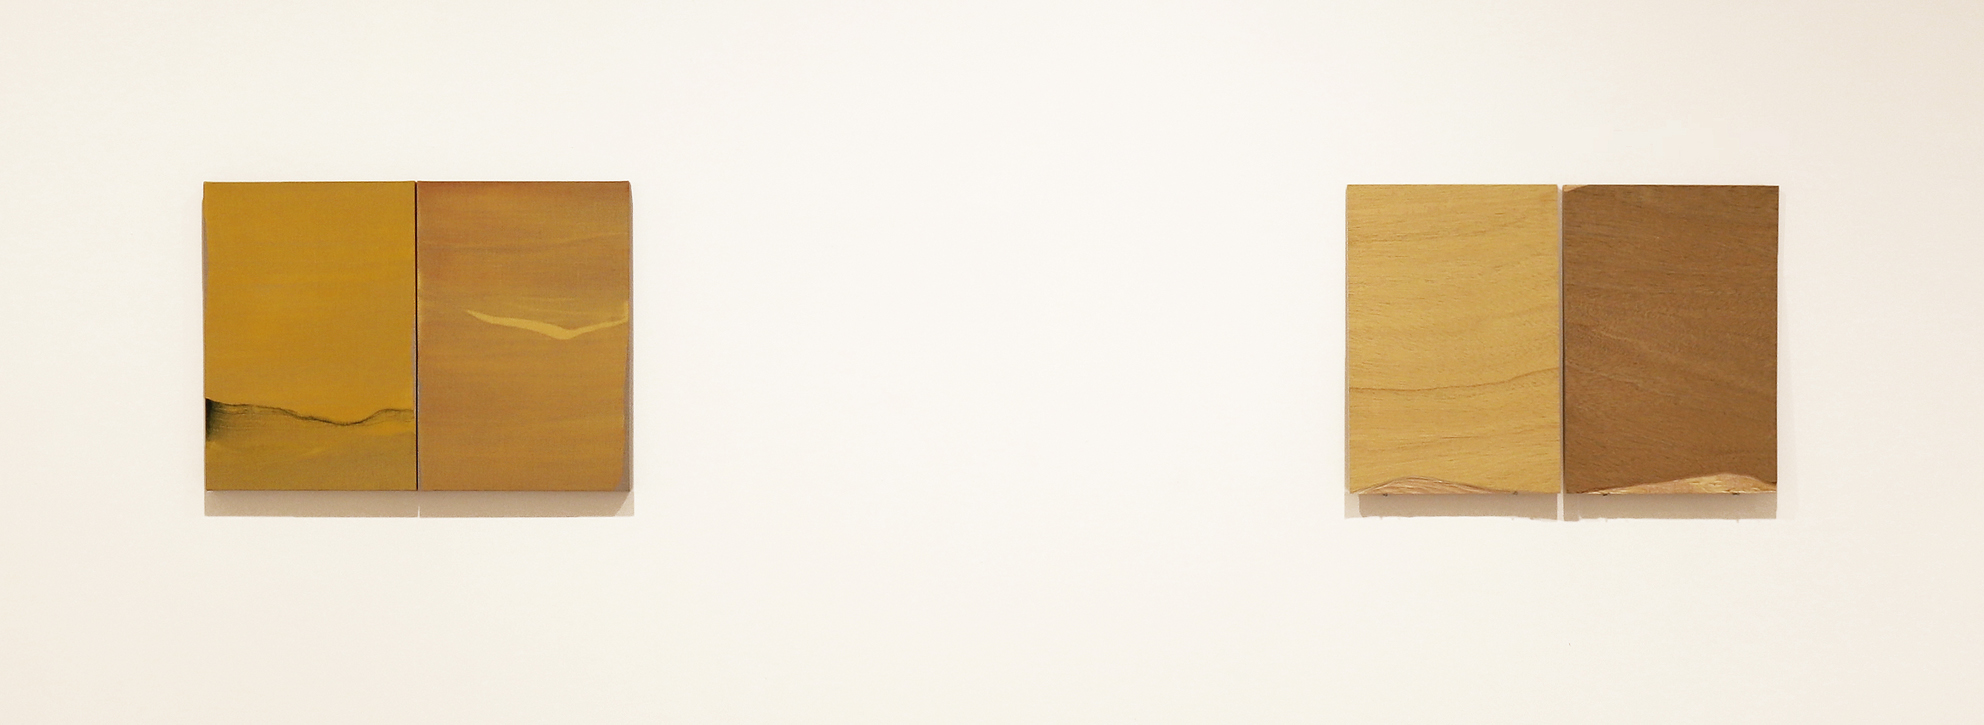 Vista de serie dispecto duo y origo. 2018. Acrílico, lino y madera. 50 x 68 cm. Nico Munuera